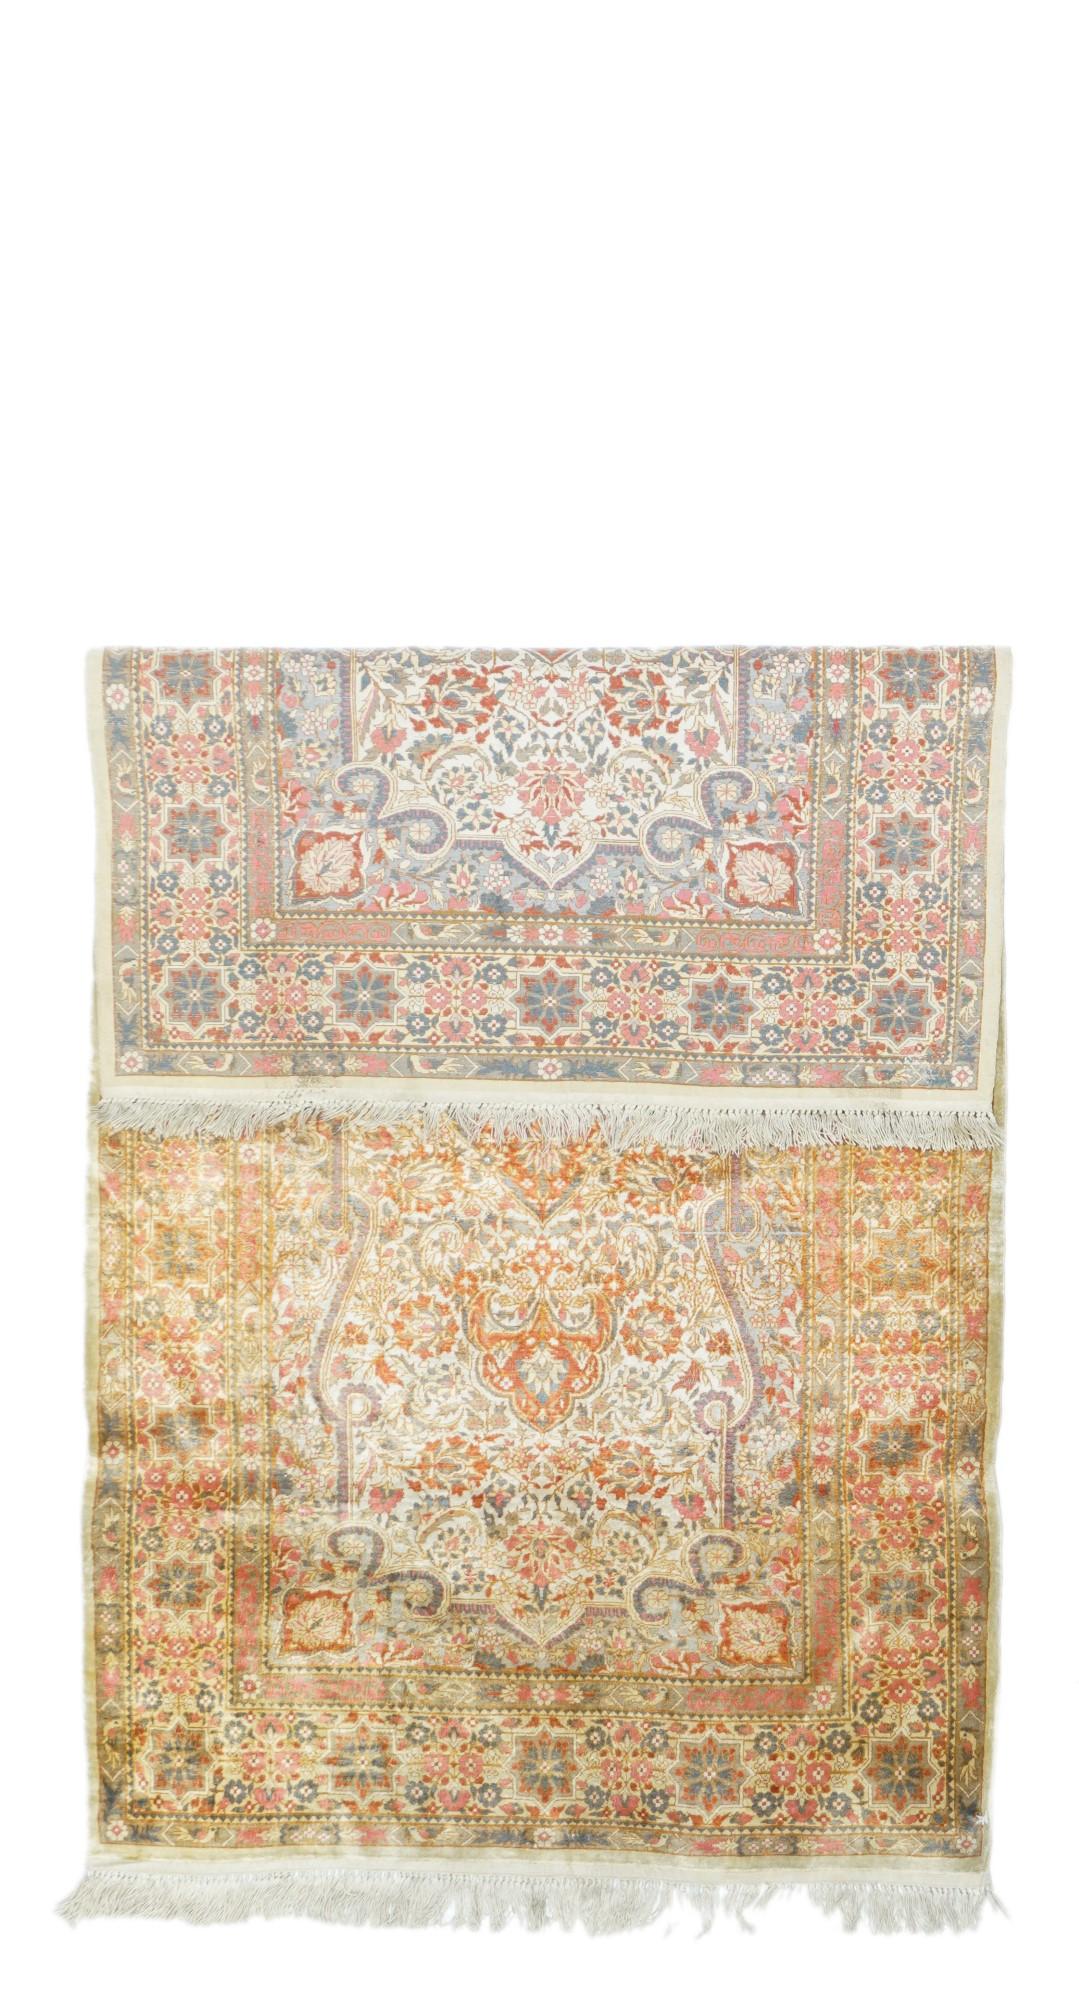  Dieser sehr feine Teppich im persischen Kashan-Stil zeigt eine helle Farbpalette mit Beige, Rost, Teal und Stroh. Großes spitzes elliptisches Medaillon auf beigem Feld mit geloopten beigen Ecken. Hauptbordüre mit Oktogrammen. Neuwertiger Zustand.